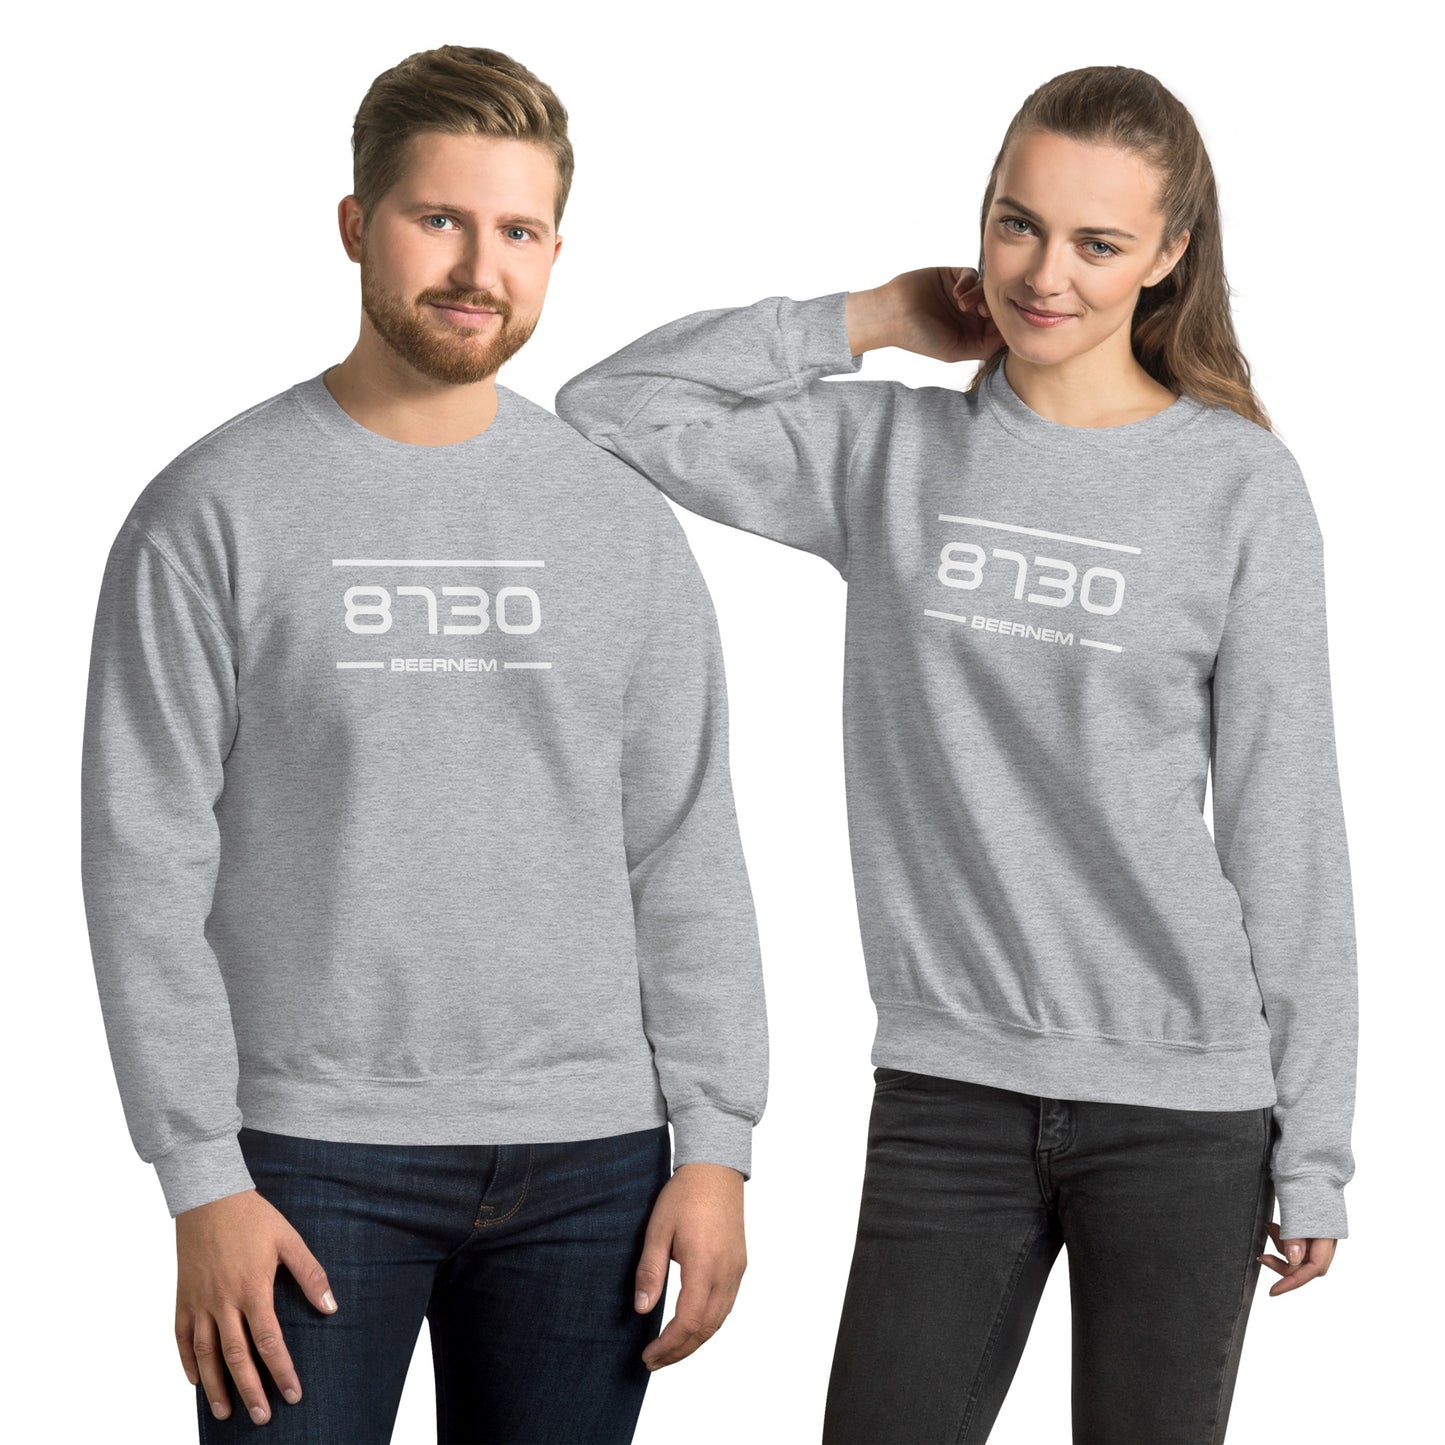 Sweater - 8730 - Beernem (M/V)